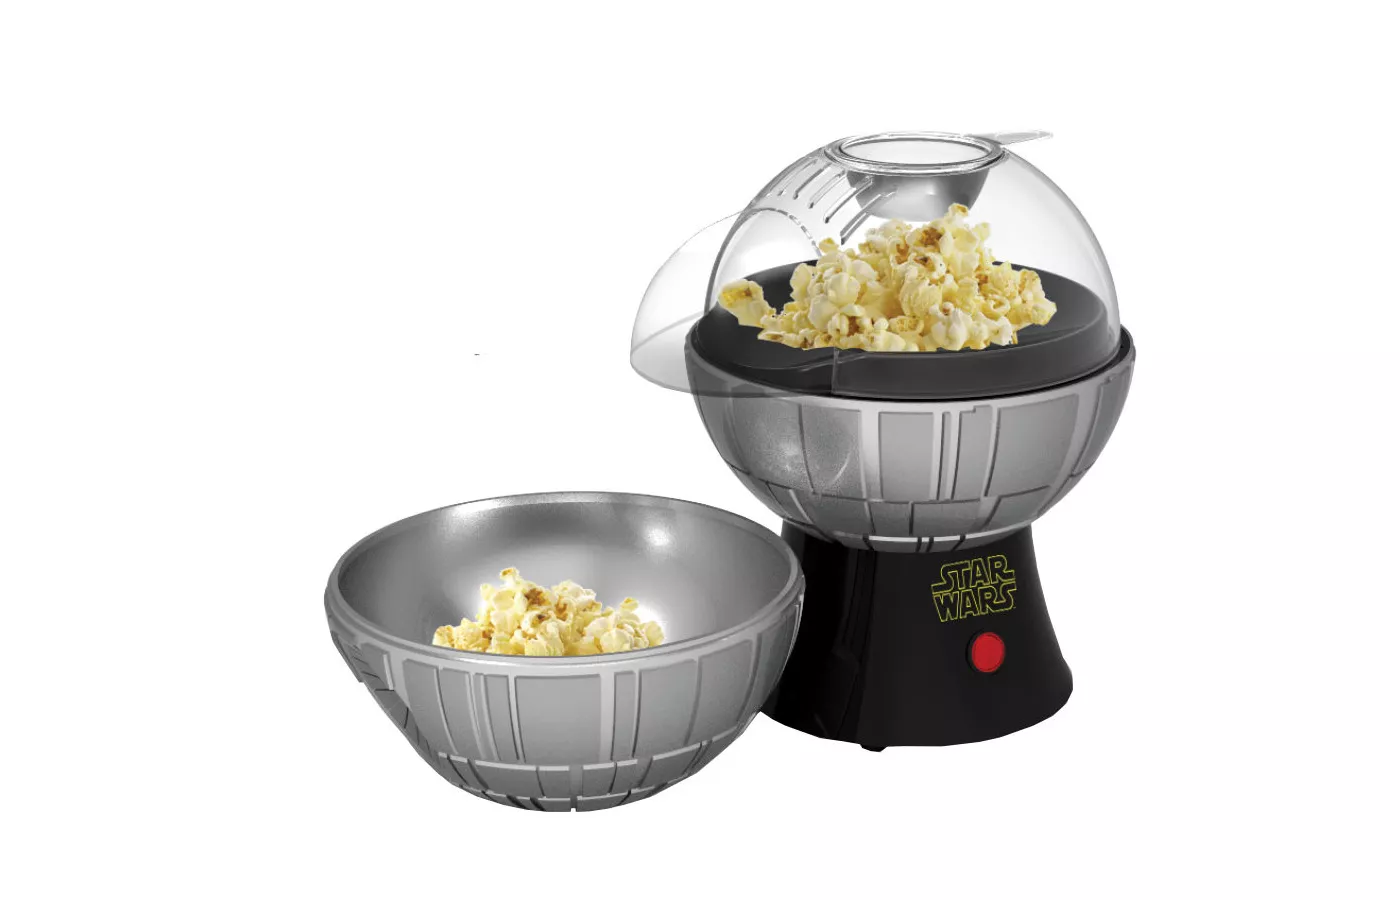 Star Wars Death Star Popcorn Maker - image 1 of 4